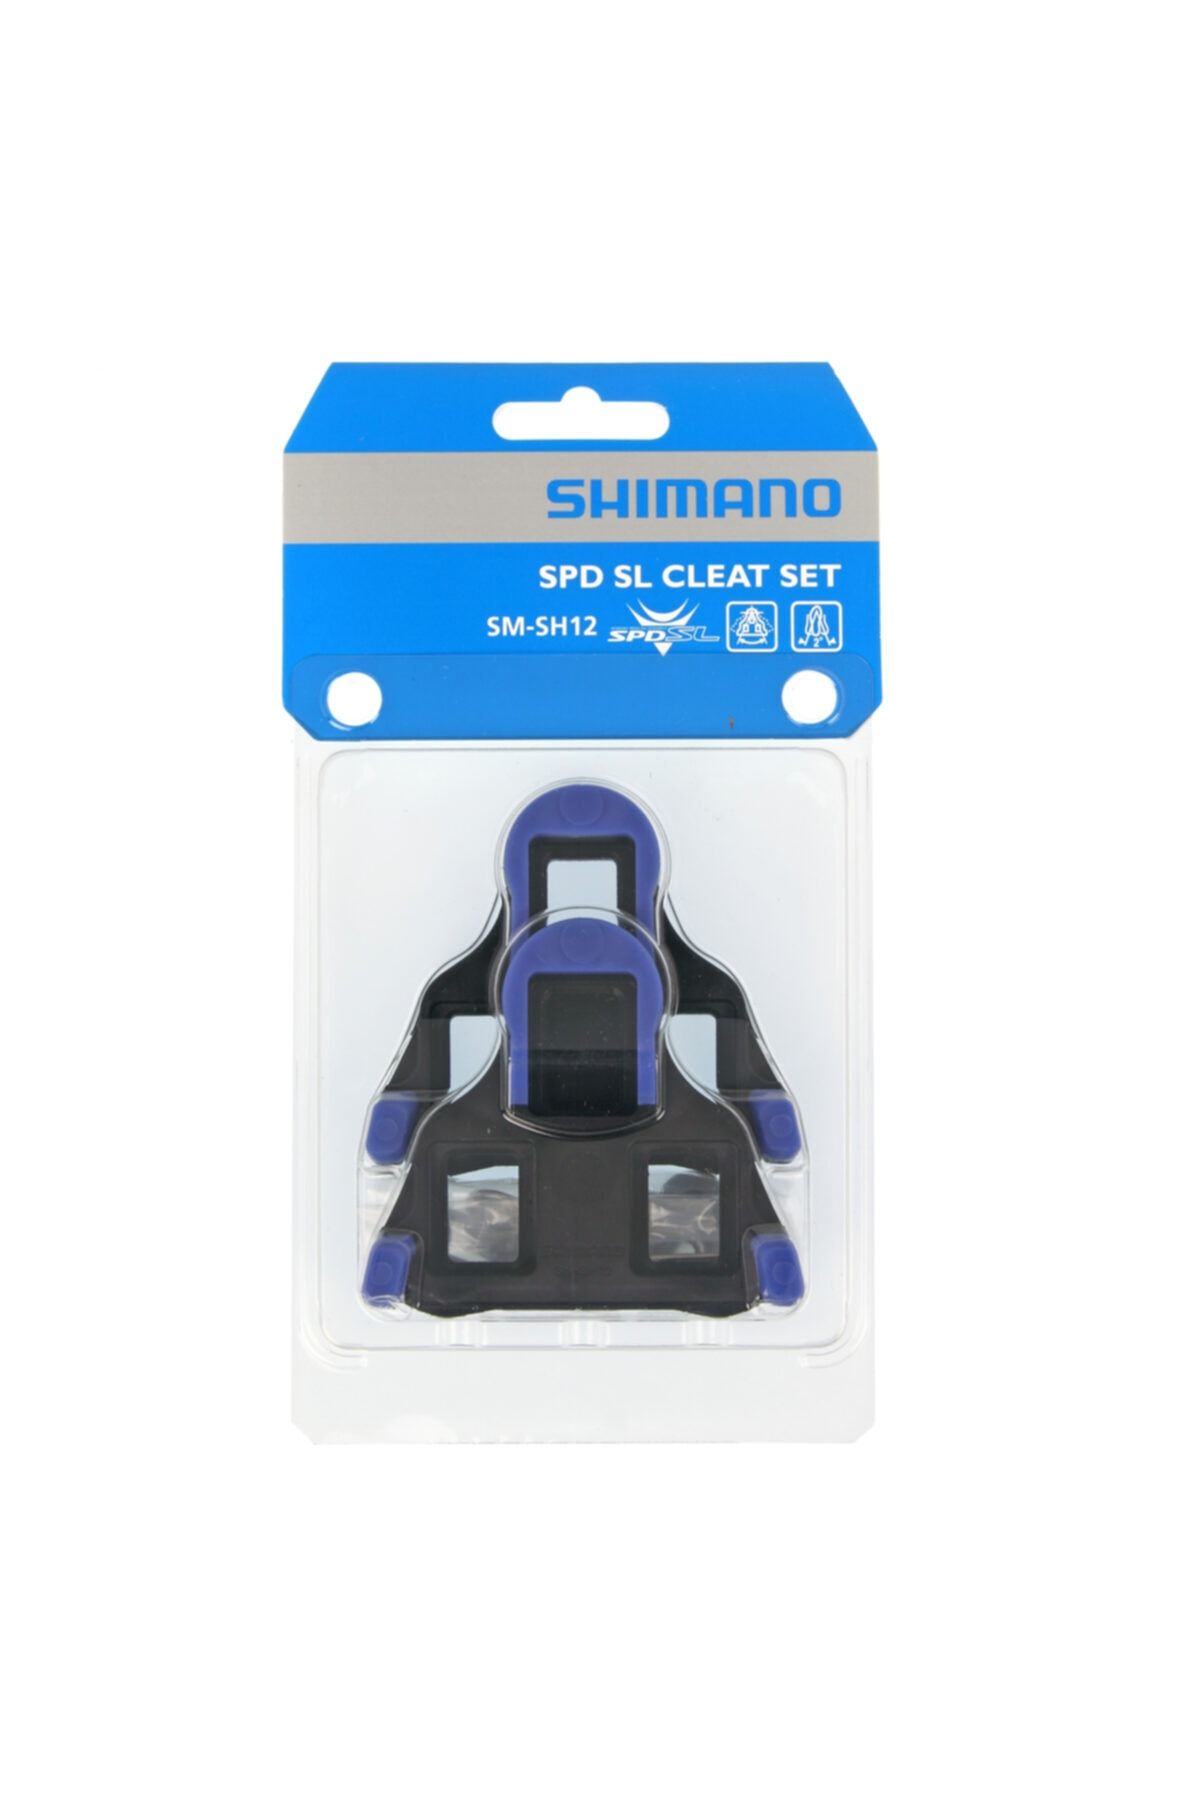 shimano Sm-sh12 Spd Sl Cleat Set Mavi 2 Derece Yol Pedal Kali